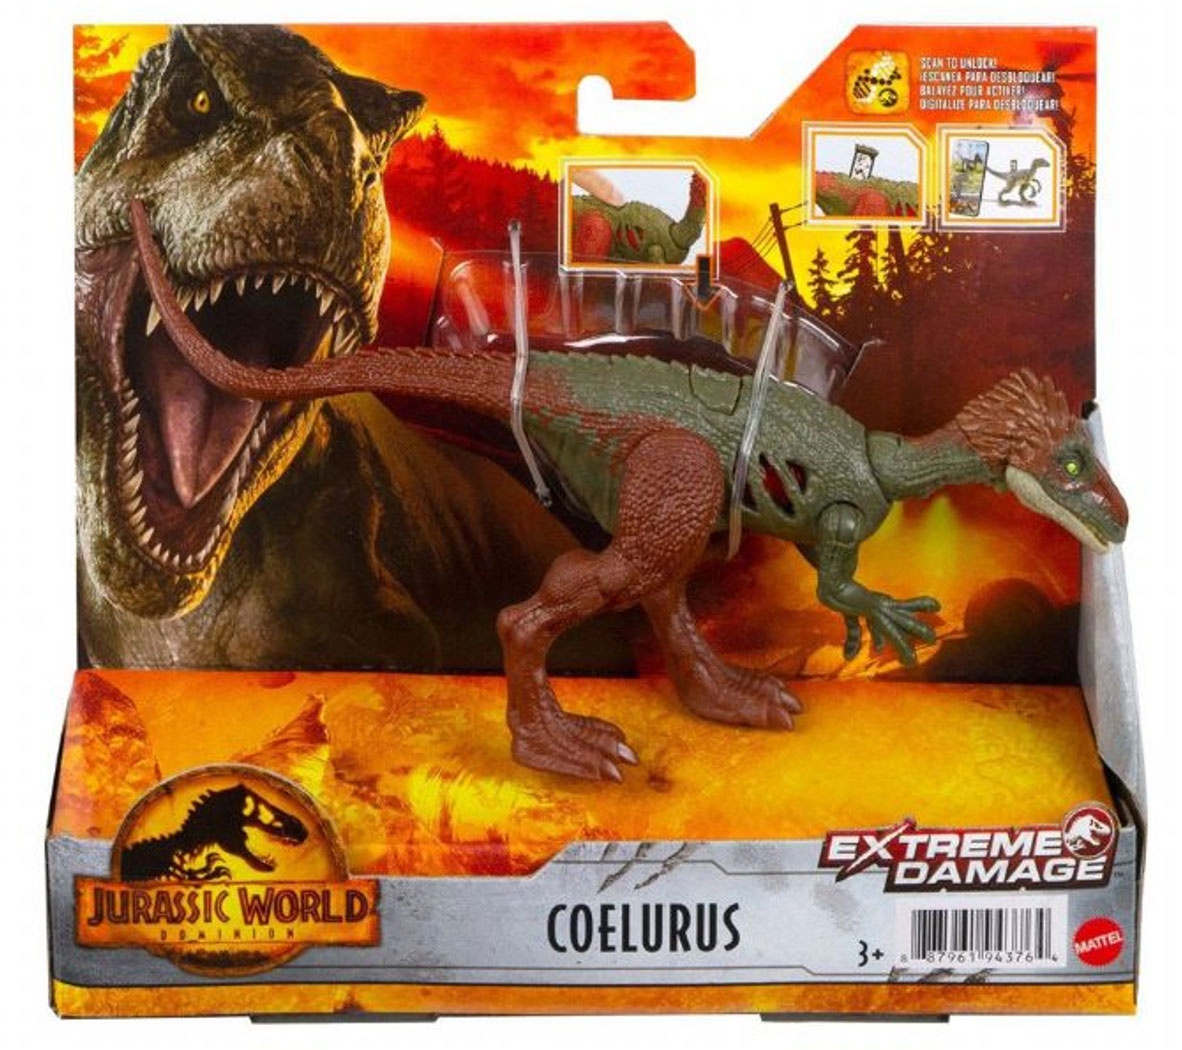 Jurassic World Extreme Damage Dino Coelurus